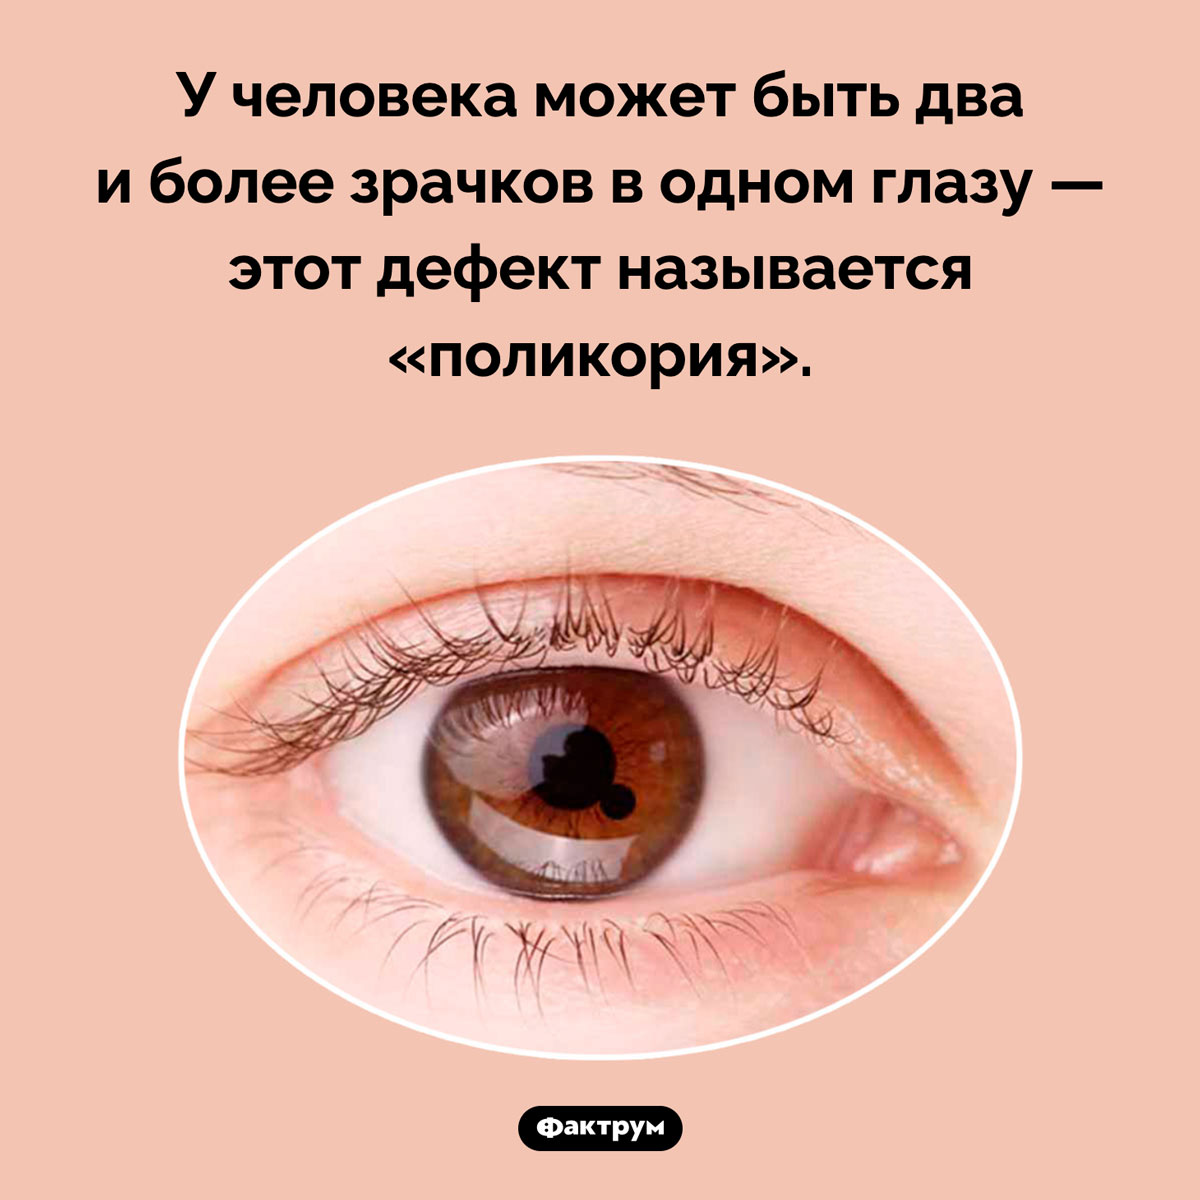 Может ли в глазу быть два зрачка. У человека может быть два и более зрачков в одном глазу — этот дефект называется «поликория».